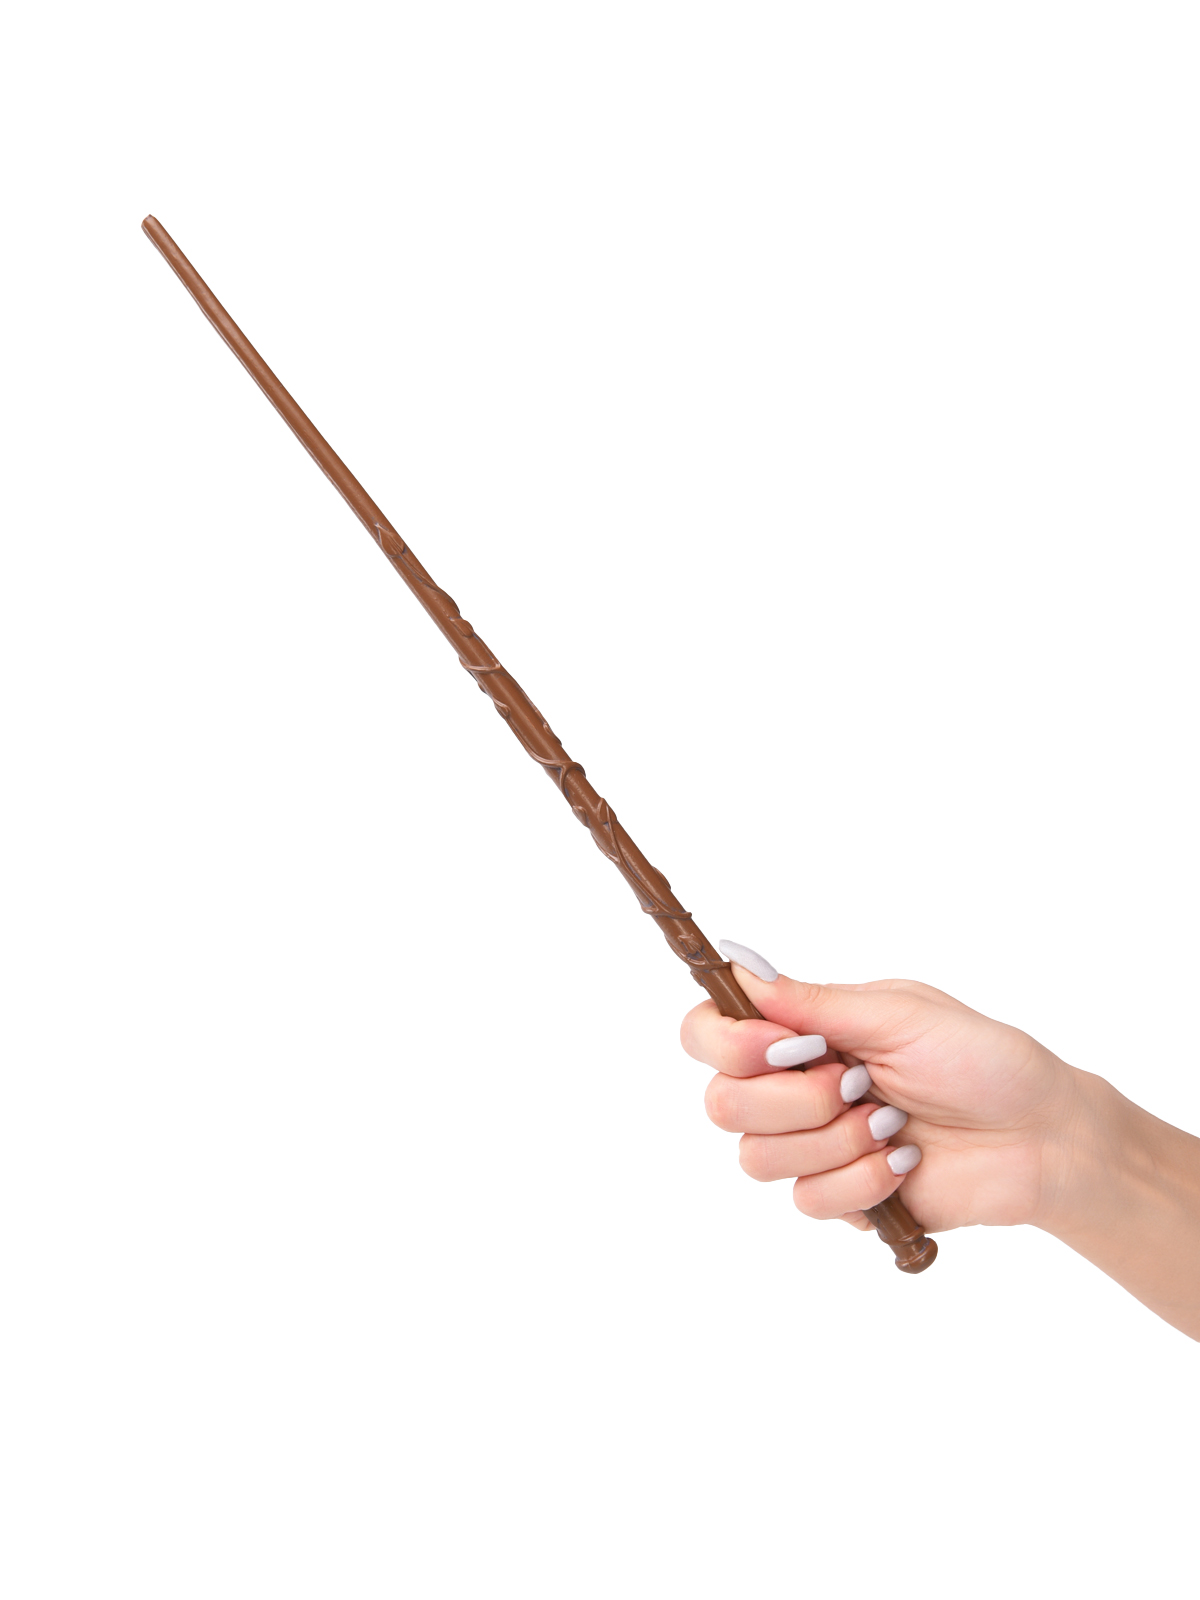 Волшебная палочка Гермионы Грейнджер из Гарри Поттера harry potter